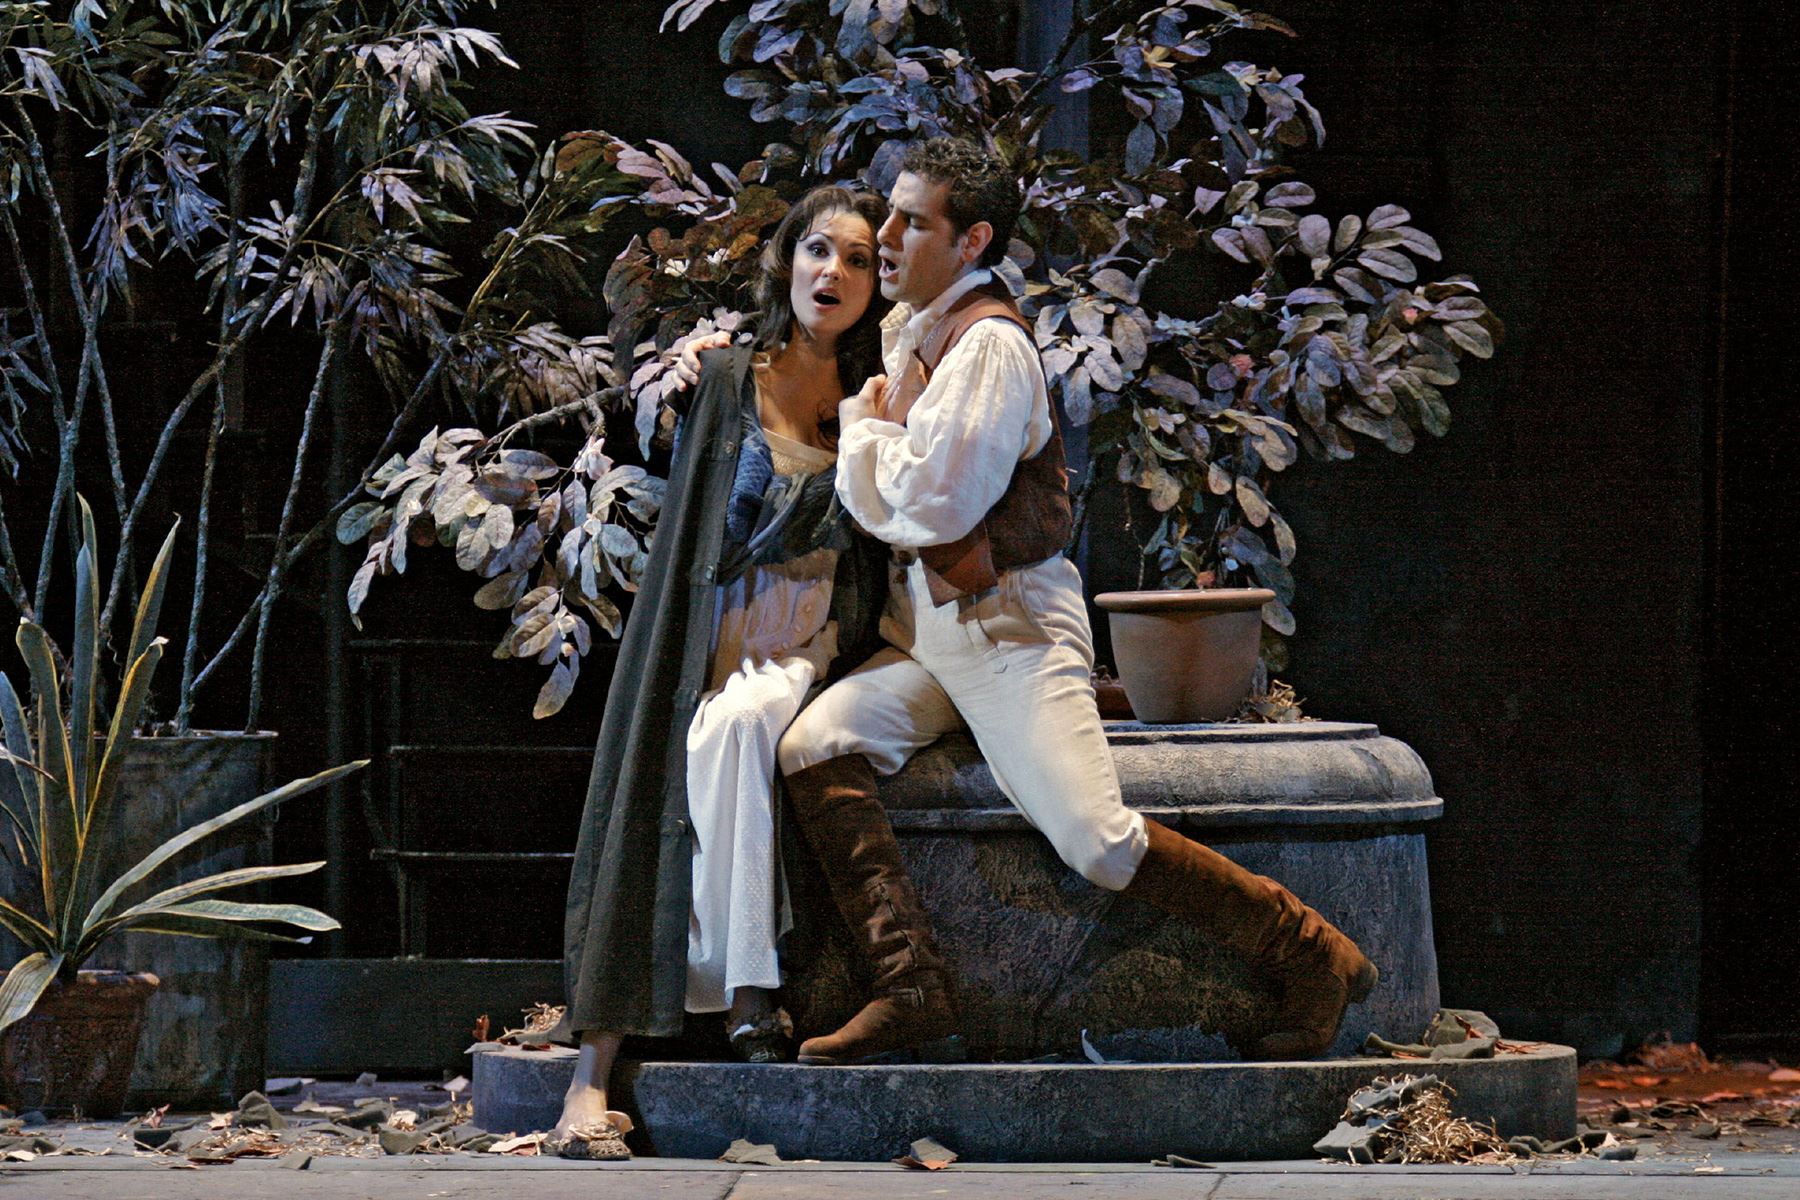 Nueva York - 30 junio 2006 / La cantante Anna Netrebko, en el papel de Norina, actúa junto al tenor Juan Diego Flórez, en el papel de Ernesto, durante una representación de la Opera "Don Pasquale", que se estrena en la Opera Metropolitana de Nueva York (EEUU). Foto: EFE